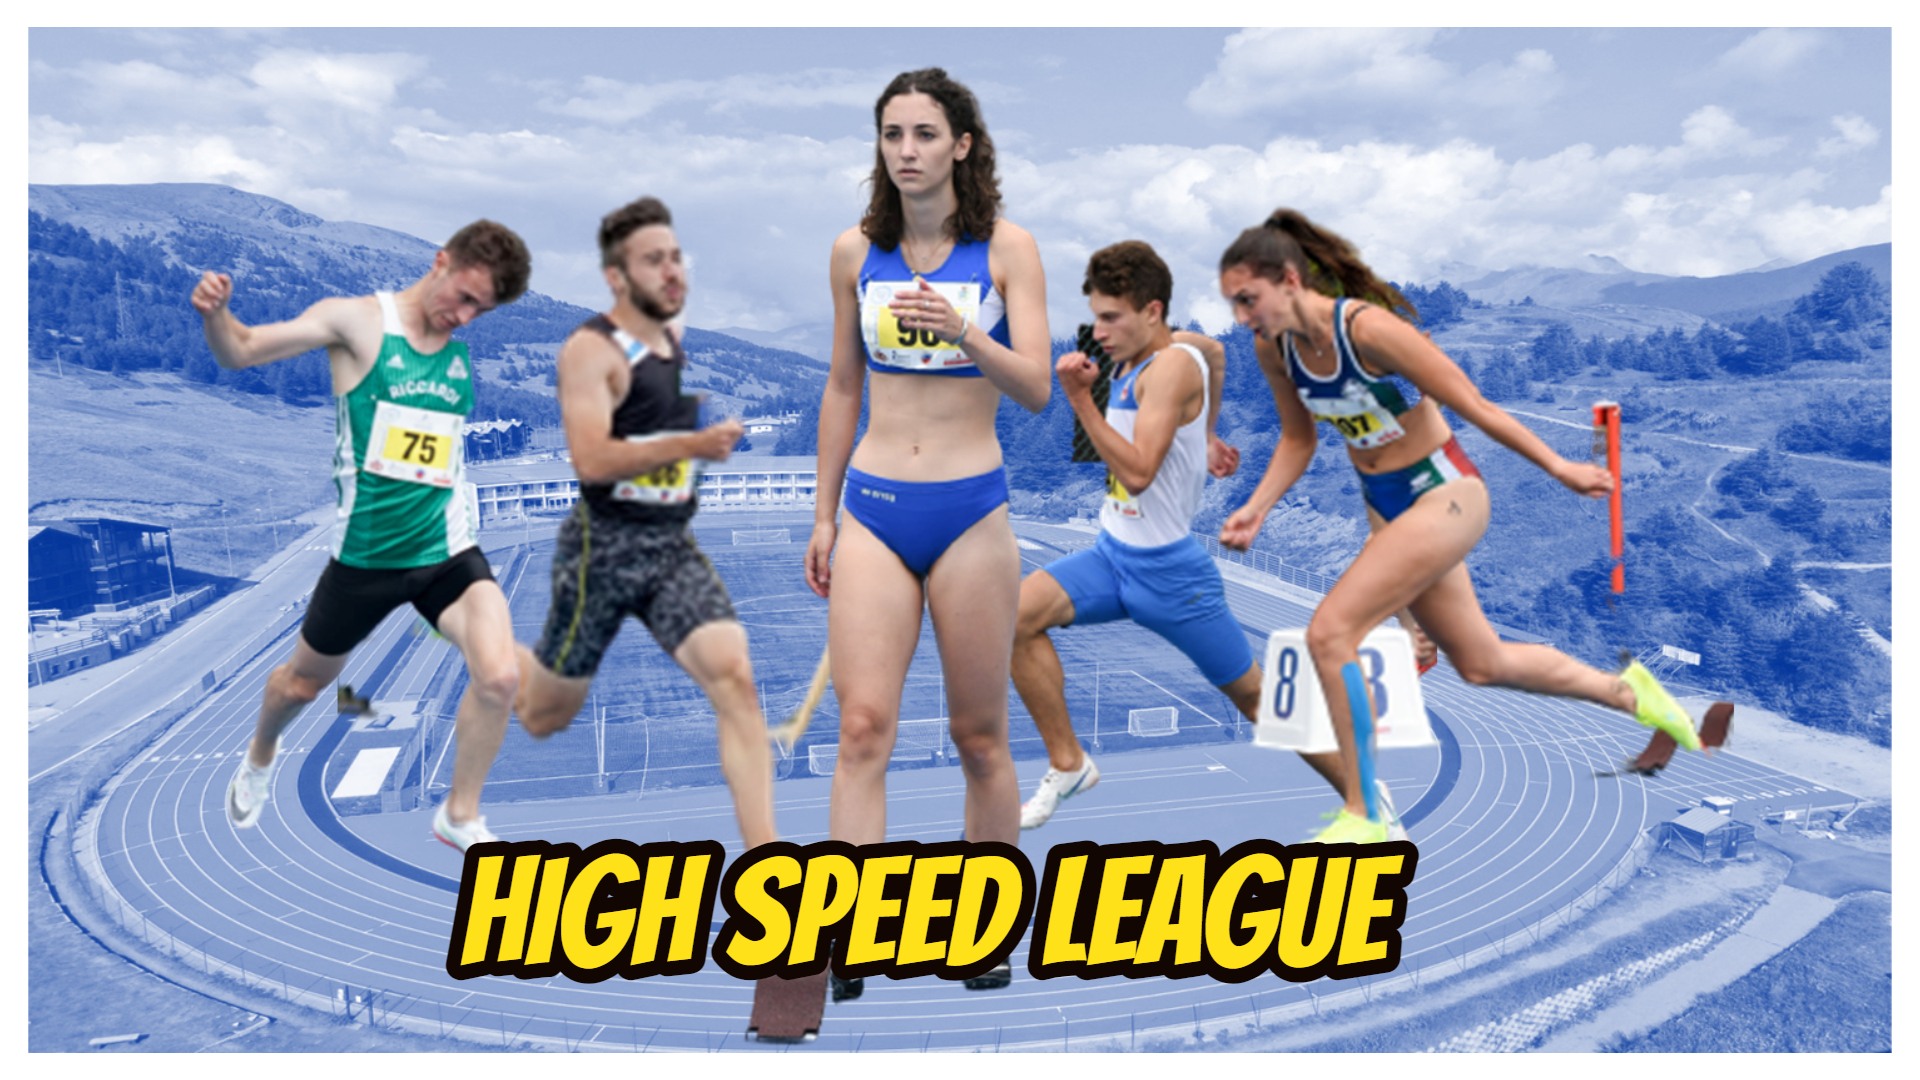 Hight Speed League